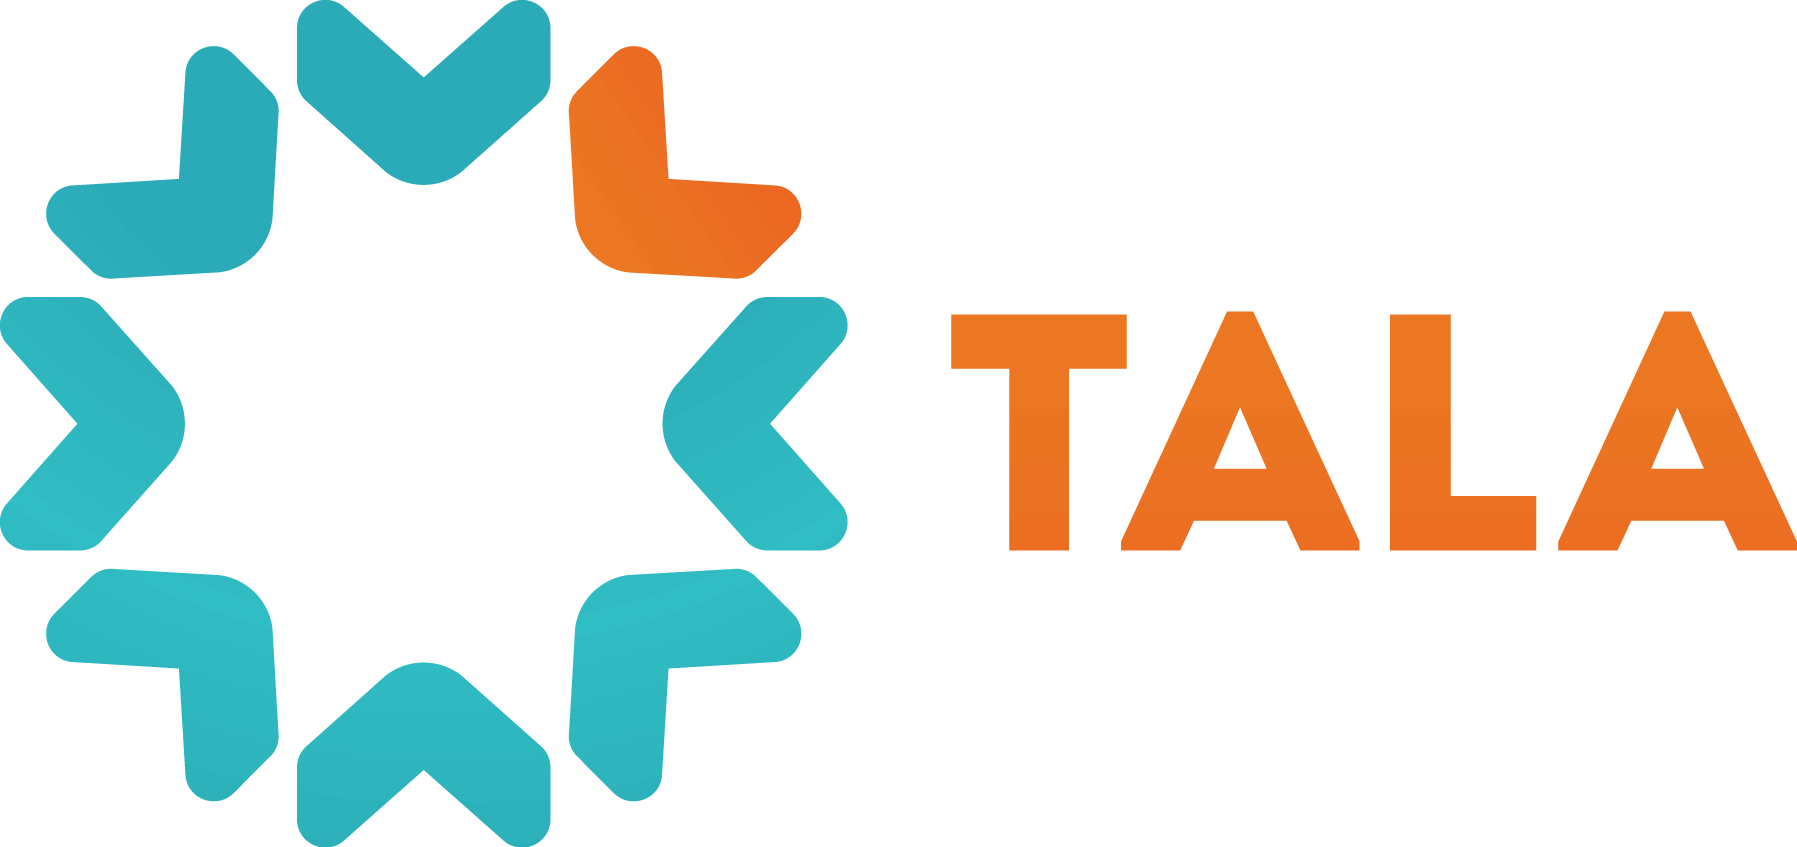 Loan App Logo - Tala loan App: Tala application for instant mobile loan (2019)